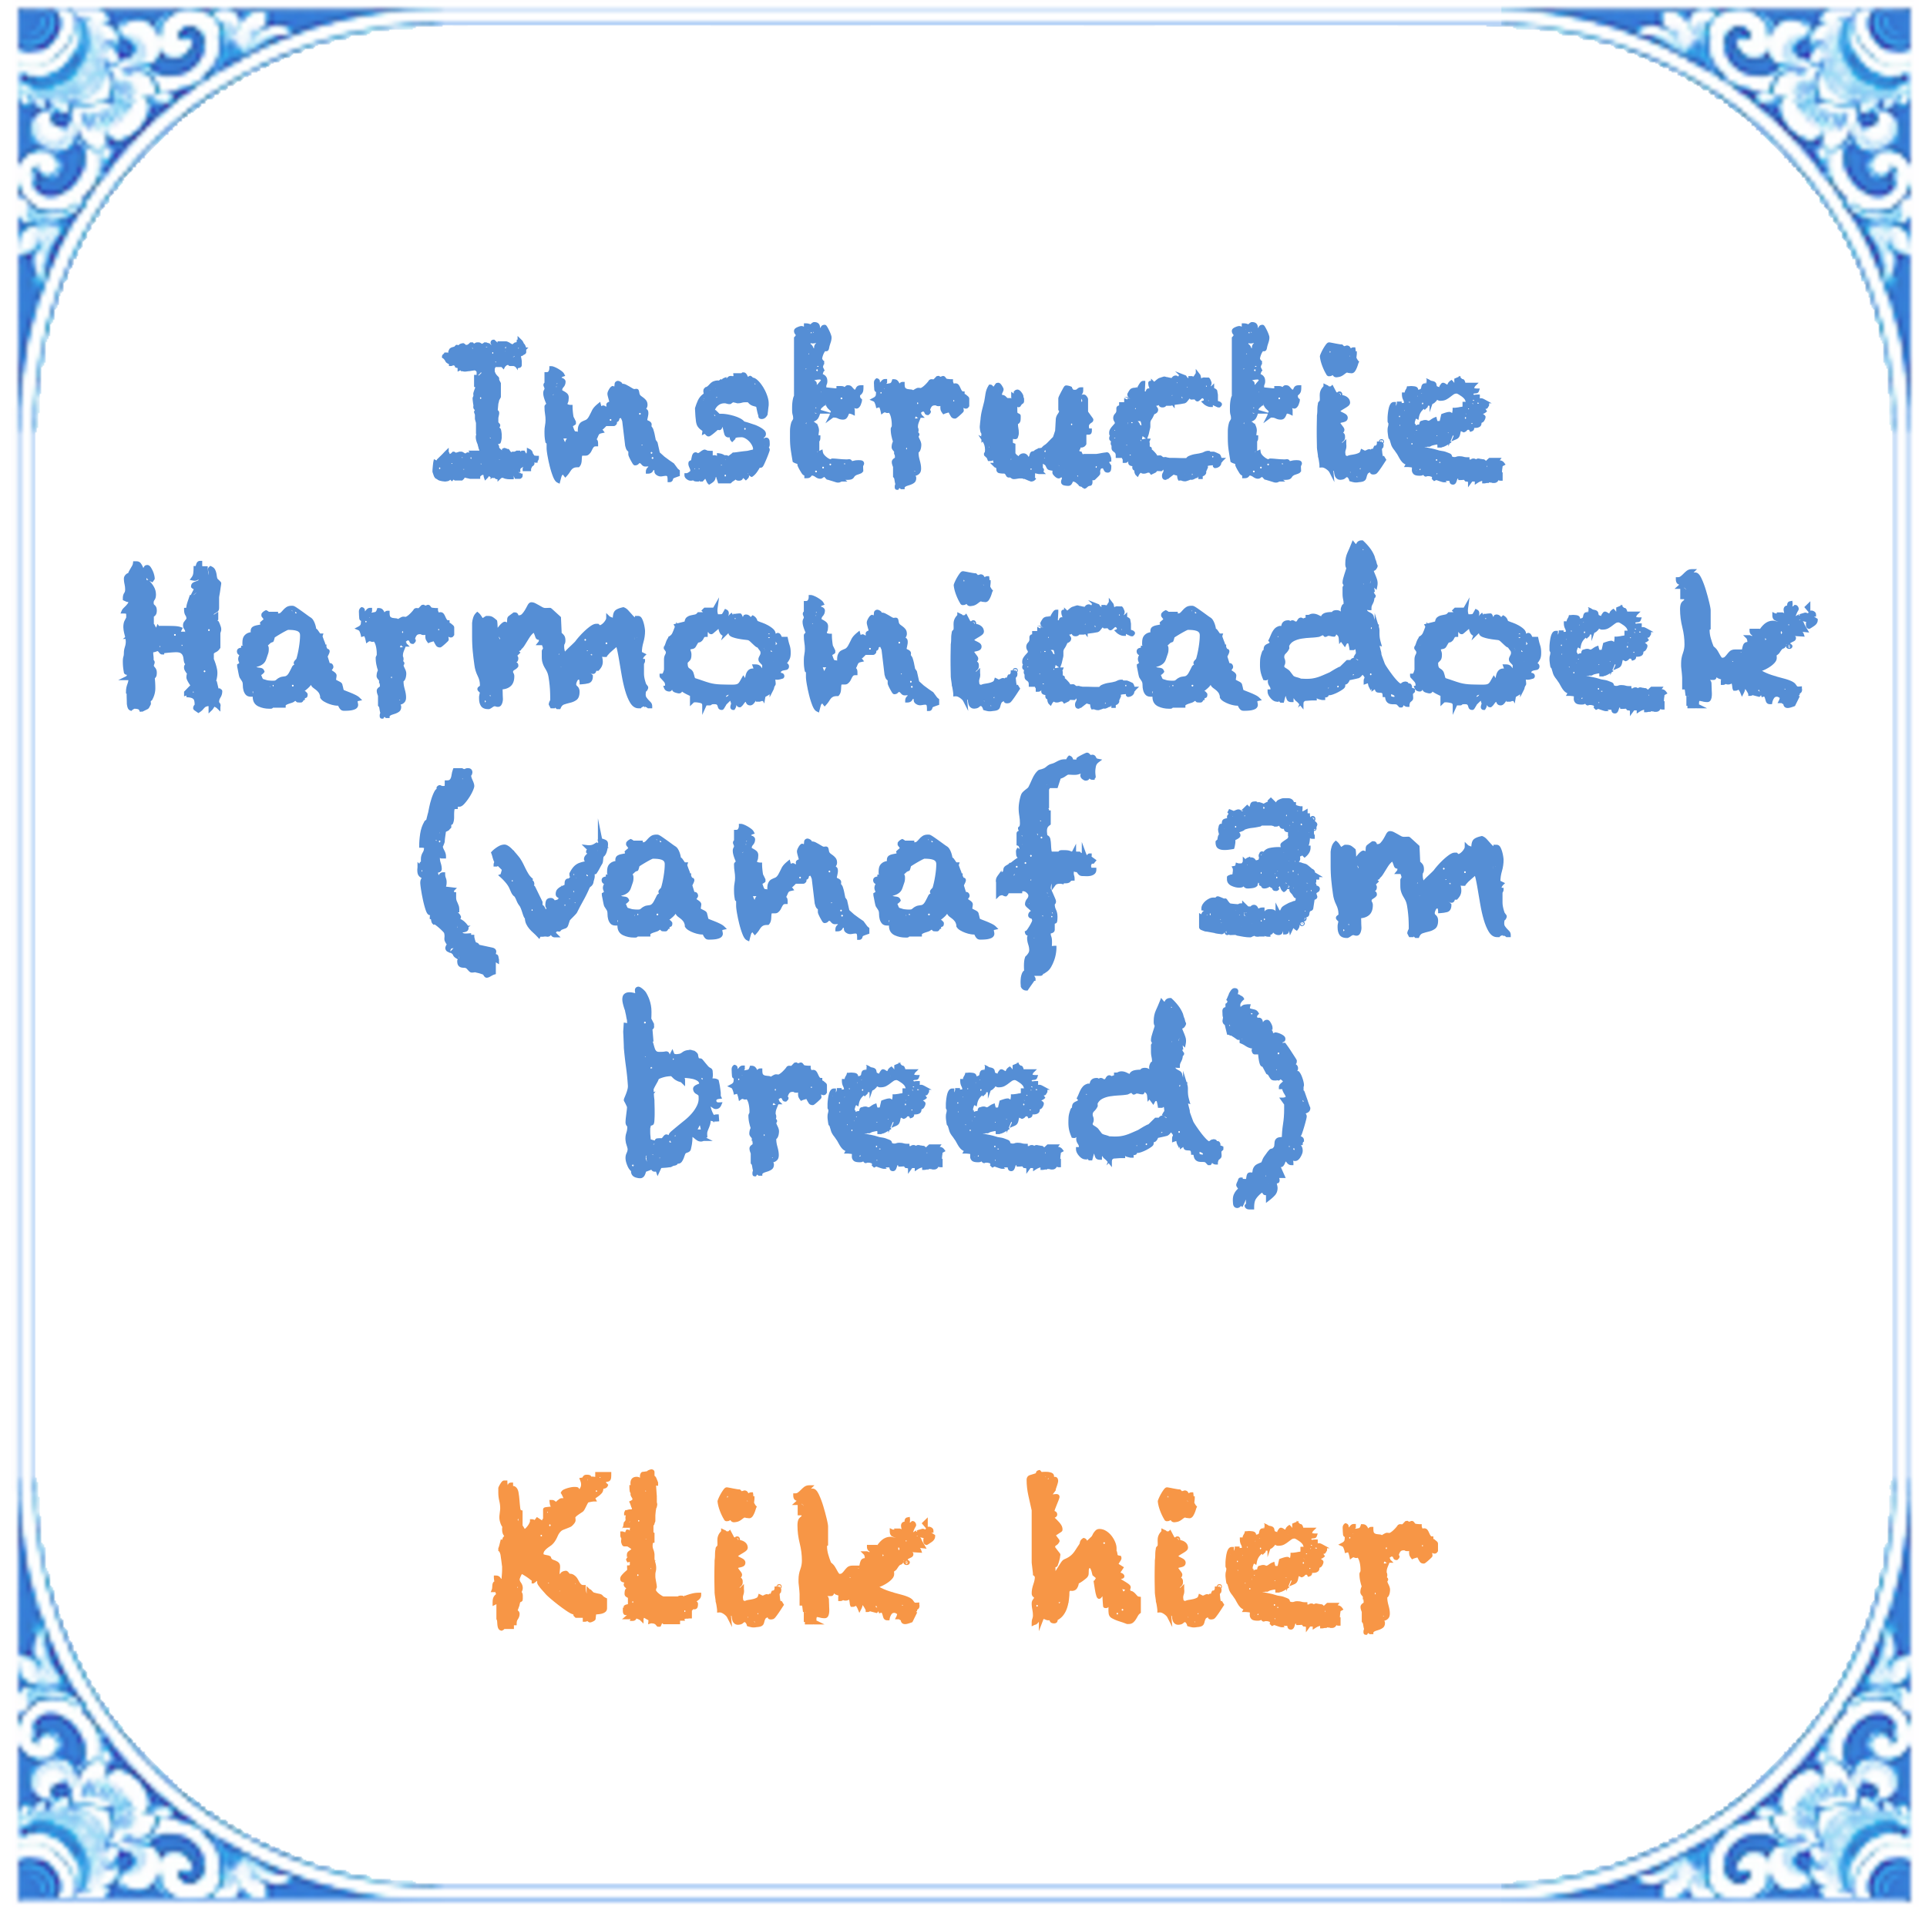 https://calculator.bootzeil.nl/storage/files/media/handleidingen/tegeltjes-voor-op-de-pagina/tegeltje-instructie-harmonica-tot-3m-breed.png?_t=1629471474